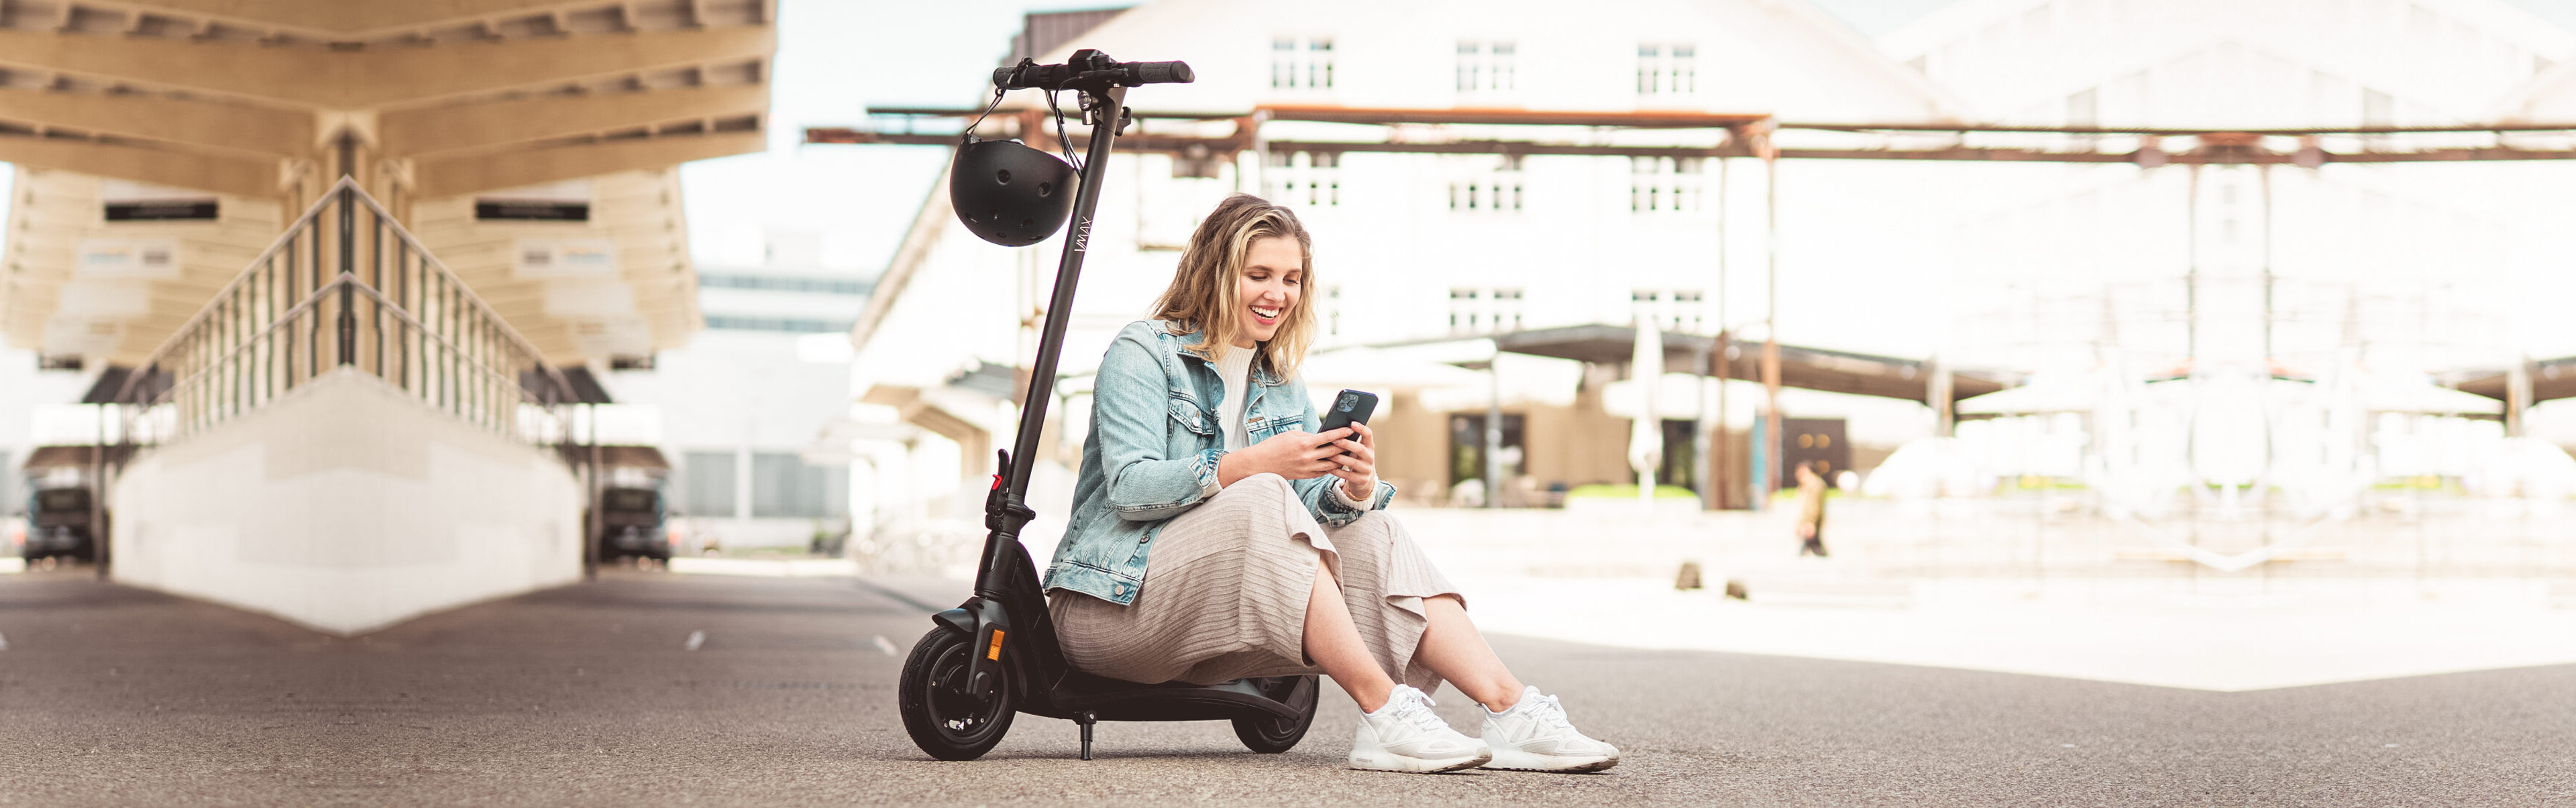 eScooter VMAX mit sitzender jungen Frau und Handy